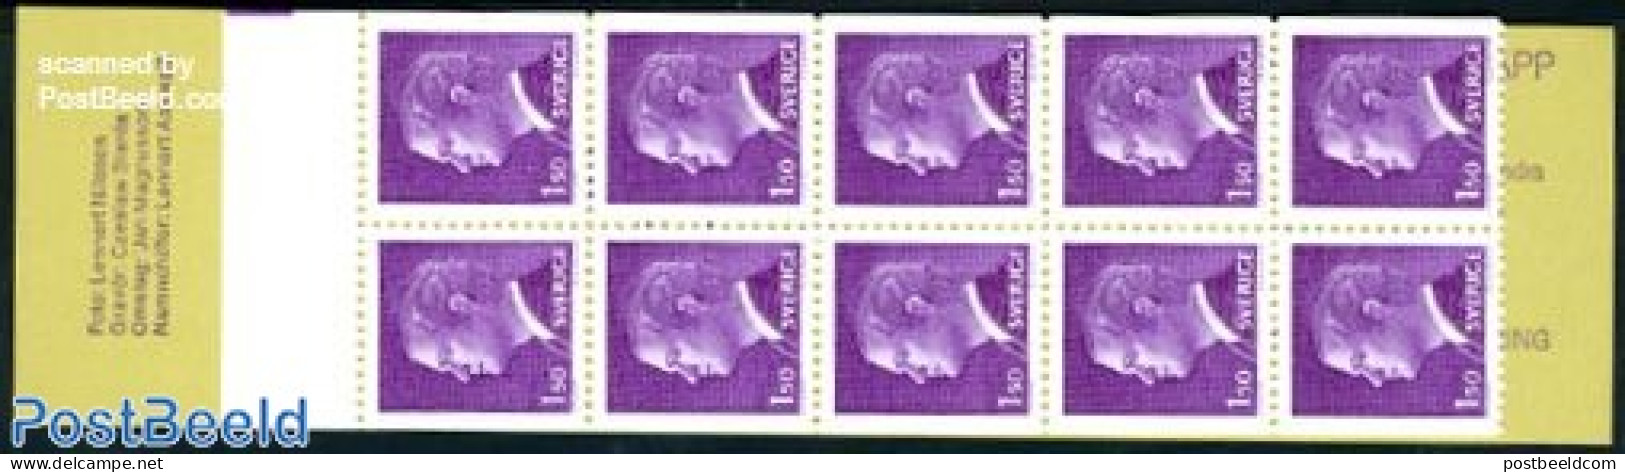 Sweden 1980 Definitives Booklet, Mint NH, Stamp Booklets - Nuovi